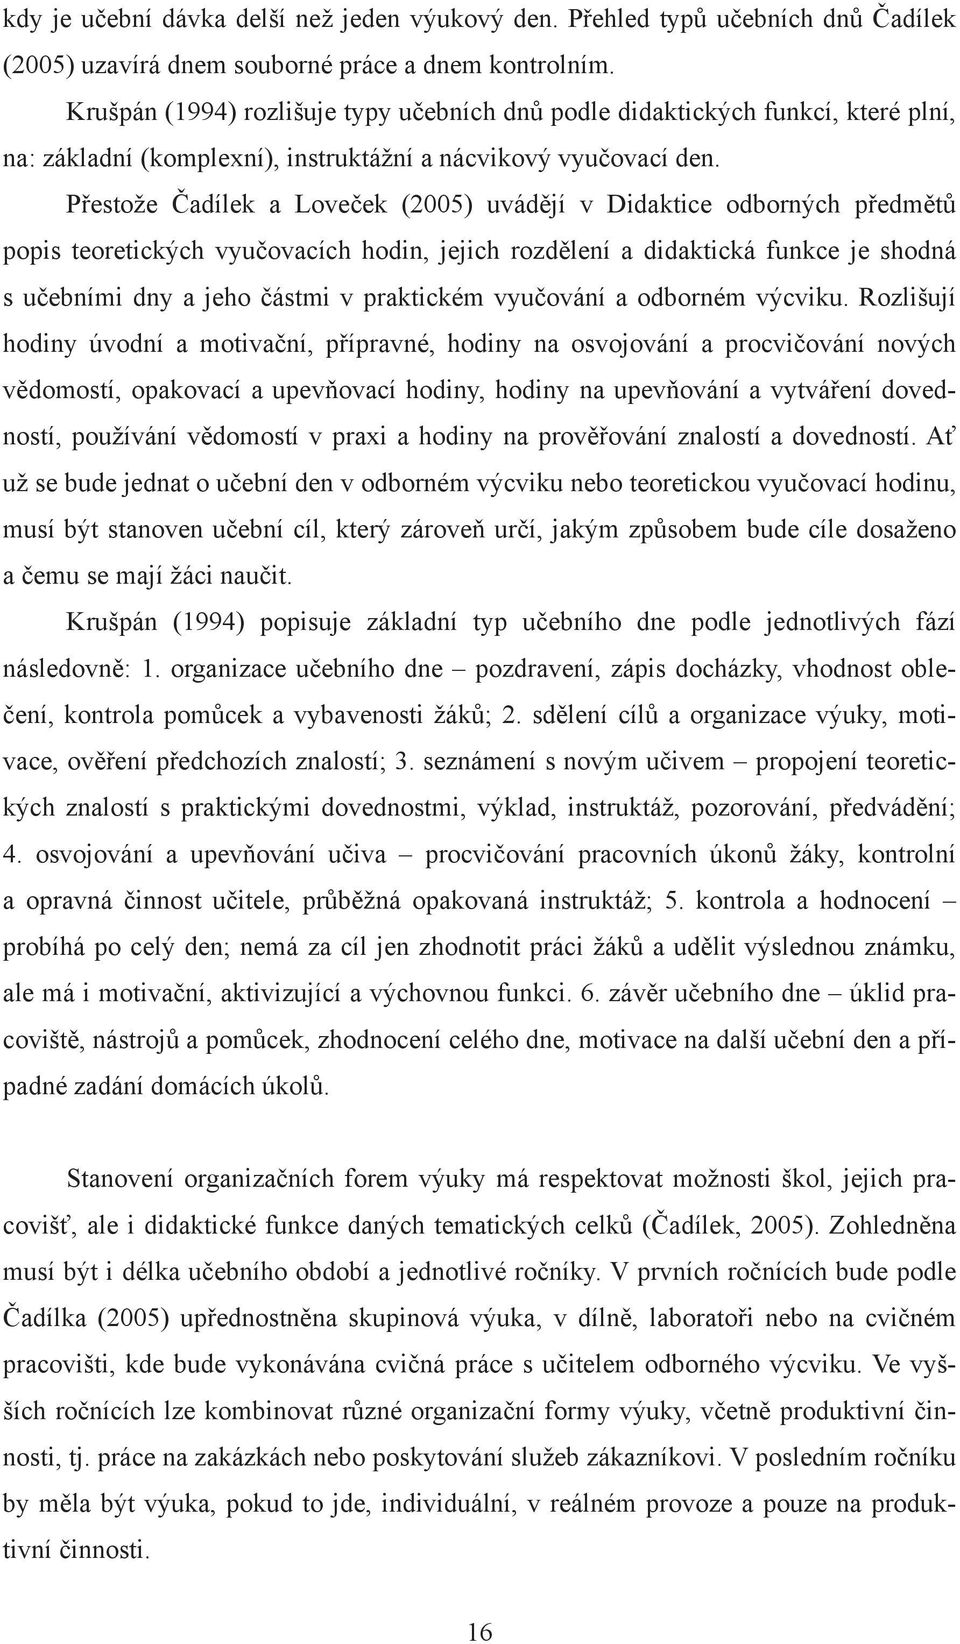 Přestože Čadílek a Loveček (2005) uvádějí v Didaktice odborných předmětů popis teoretických vyučovacích hodin, jejich rozdělení a didaktická funkce je shodná s učebními dny a jeho částmi v praktickém